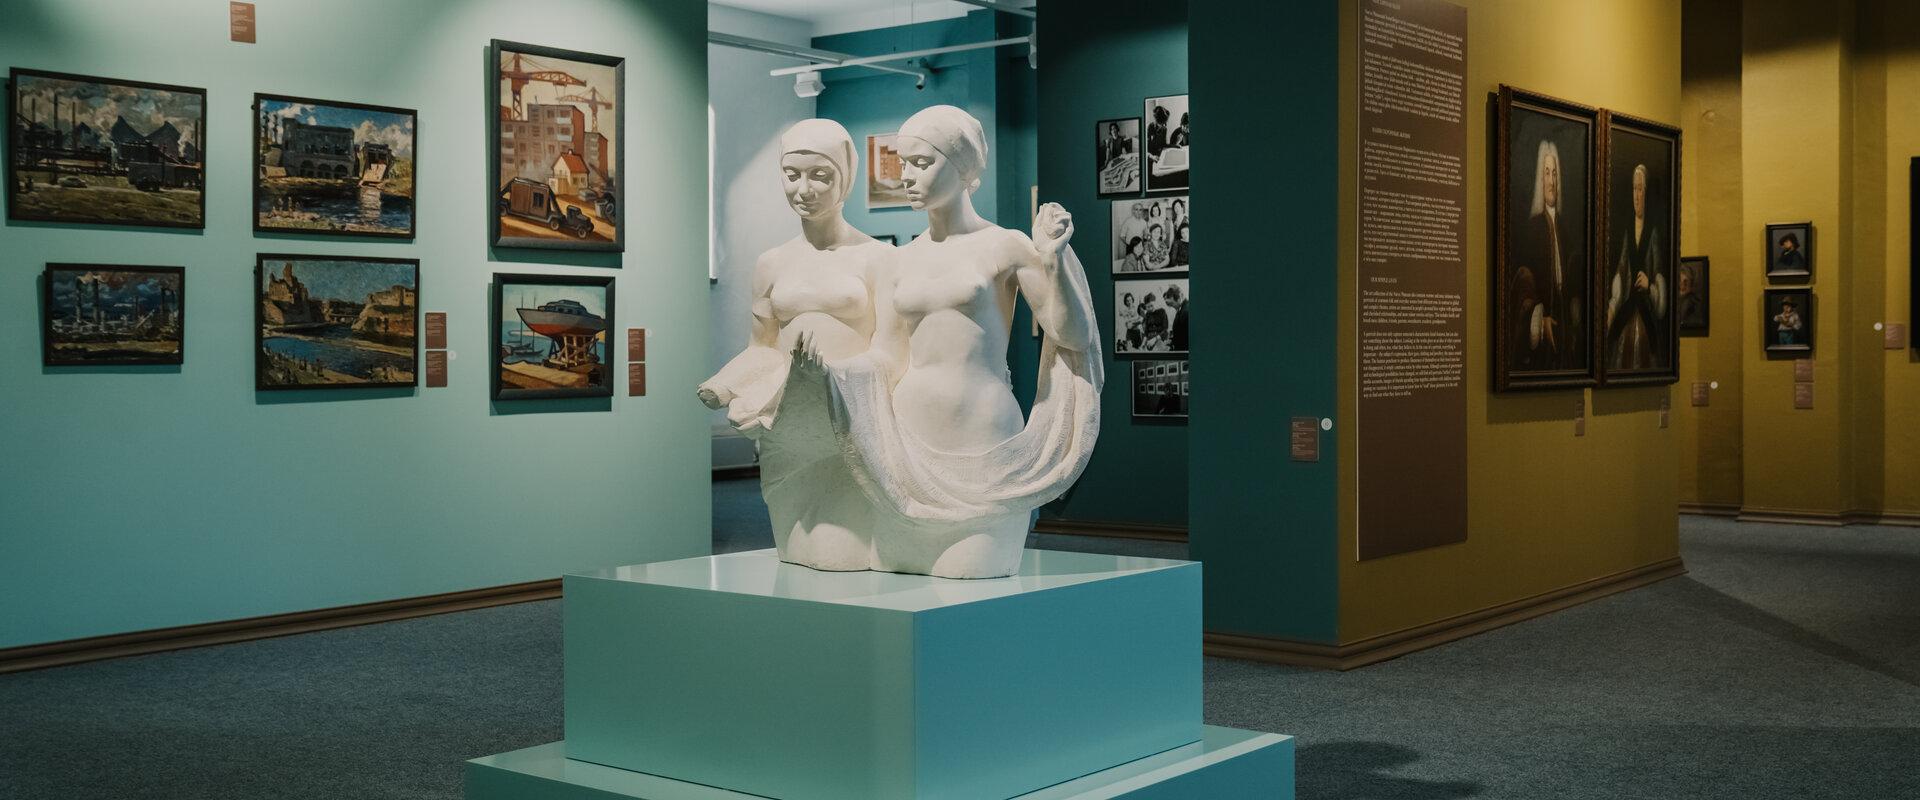 Narvan museon taidegallerian pysyvä näyttely